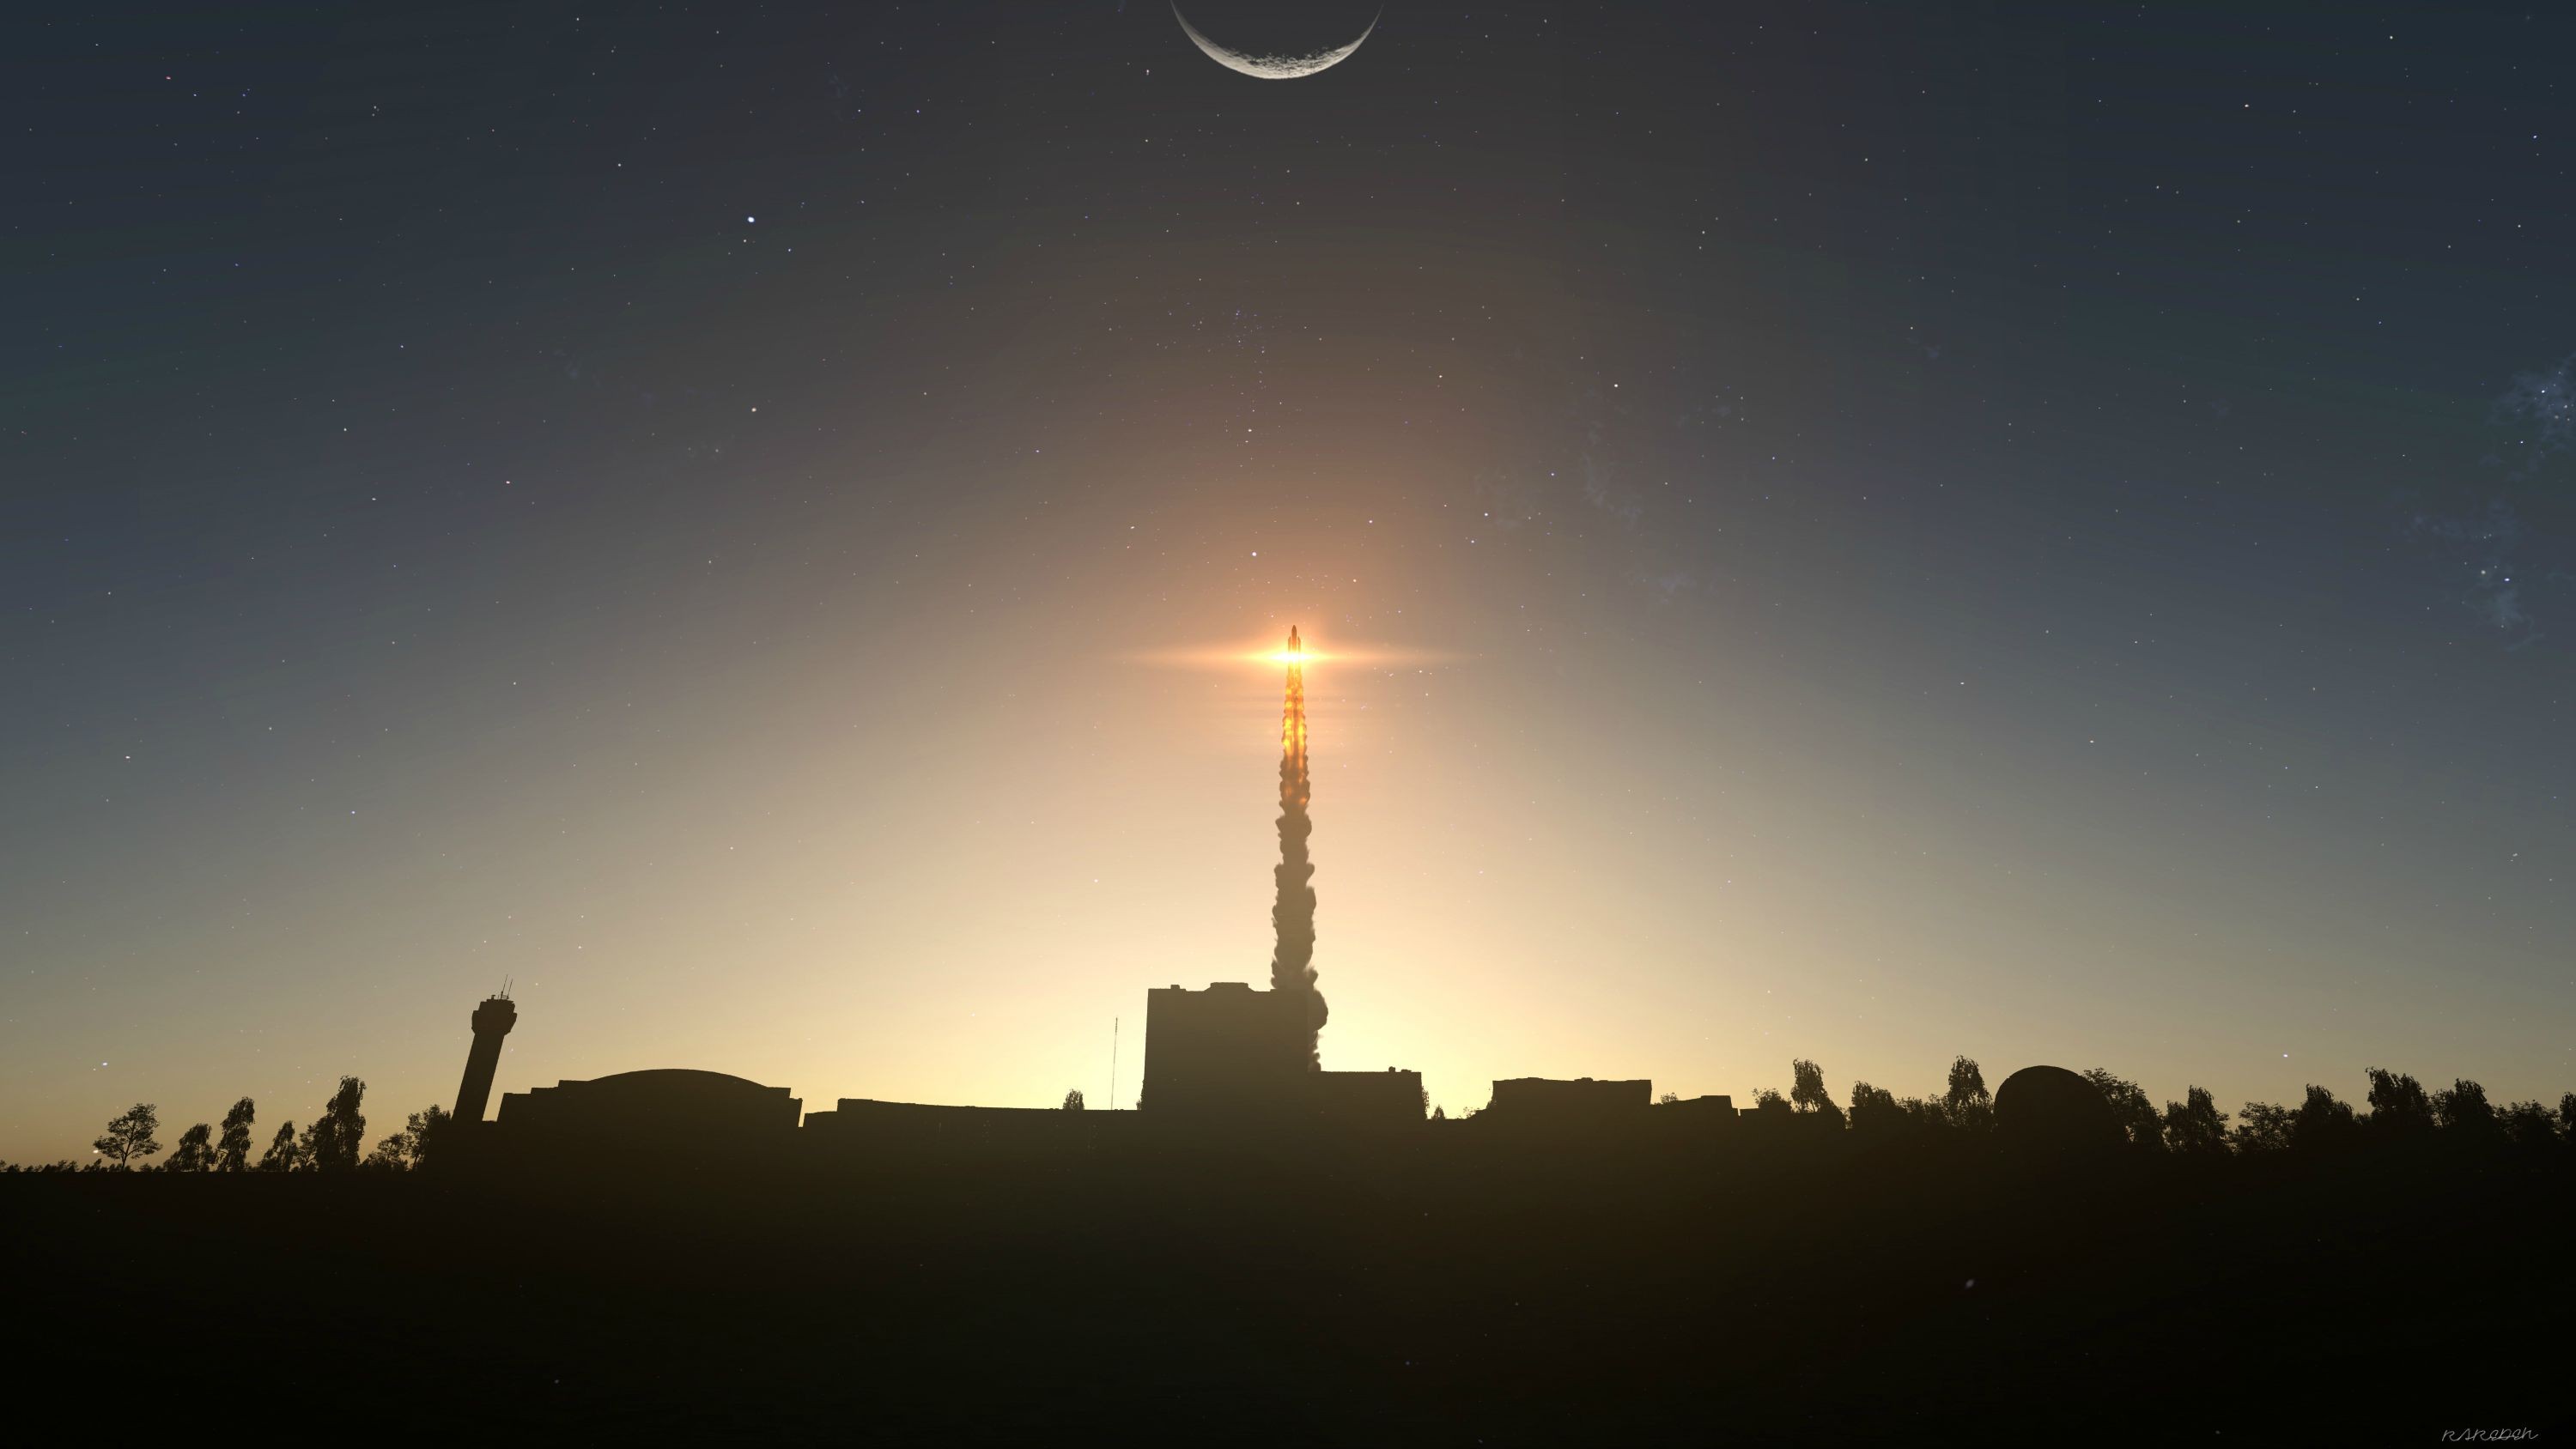 Kerbal Space Program Launch Stars Rocket Silhouette 3000x1688